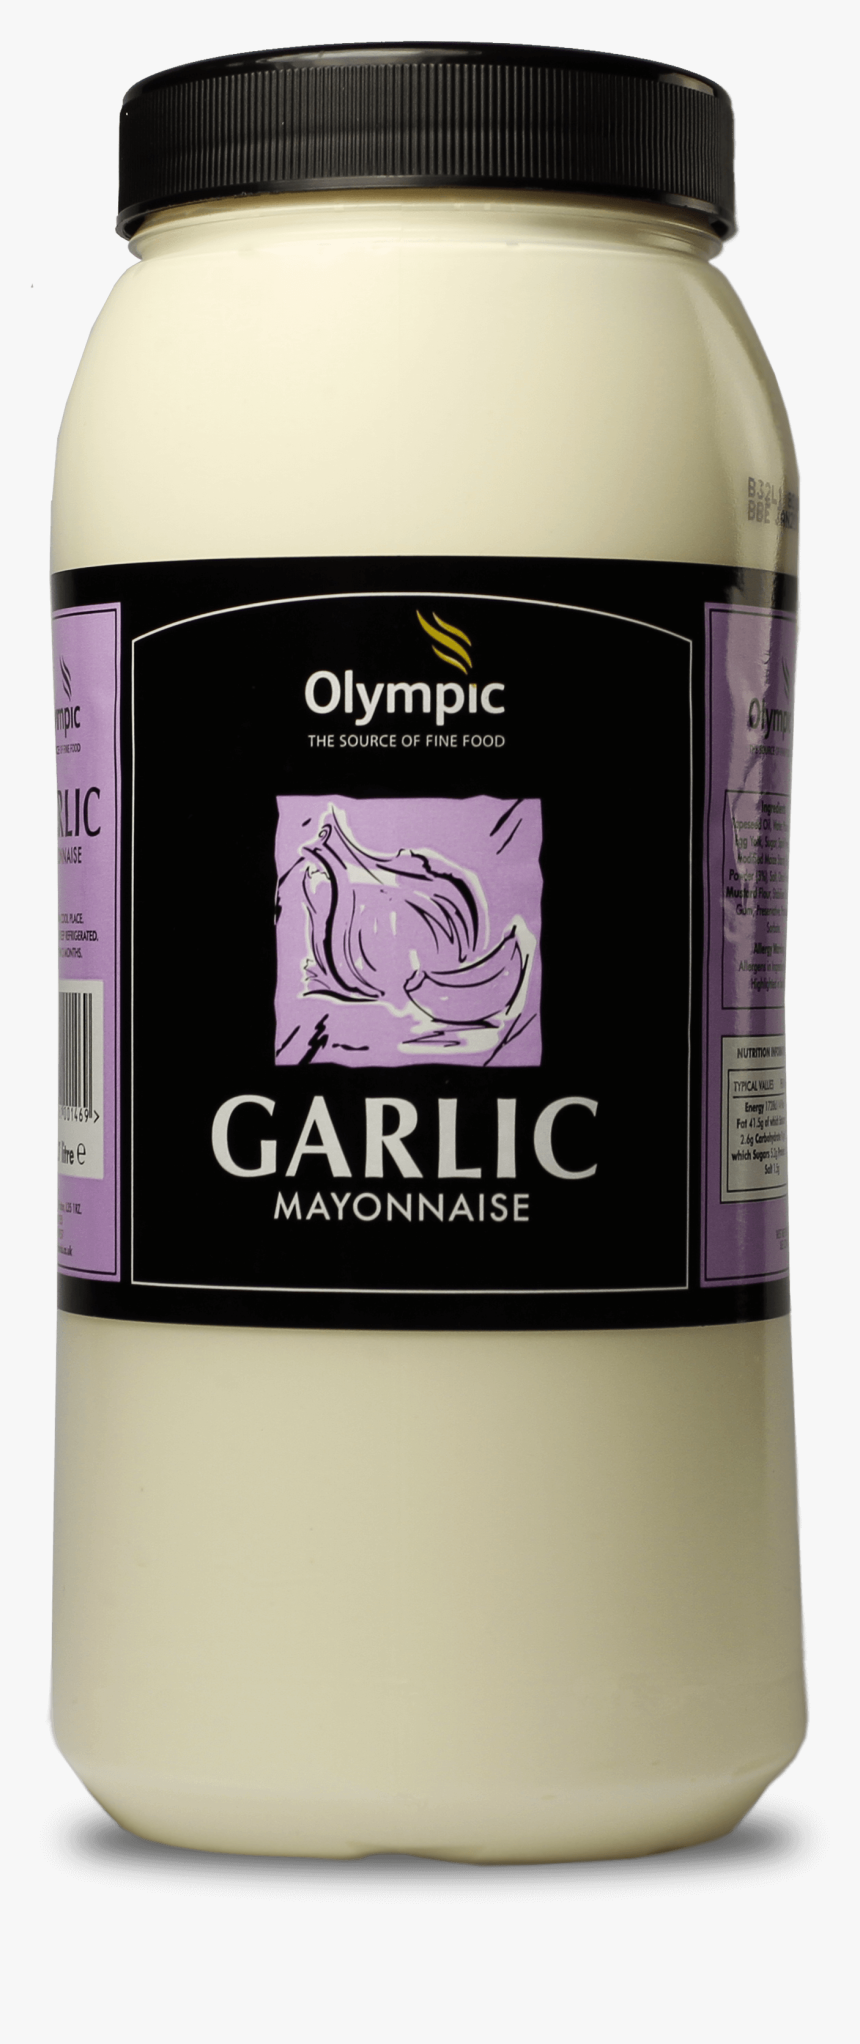 Olympic Garlic Mayonnaise - Jersey Juventus 2012 2013, HD Png Download, Free Download